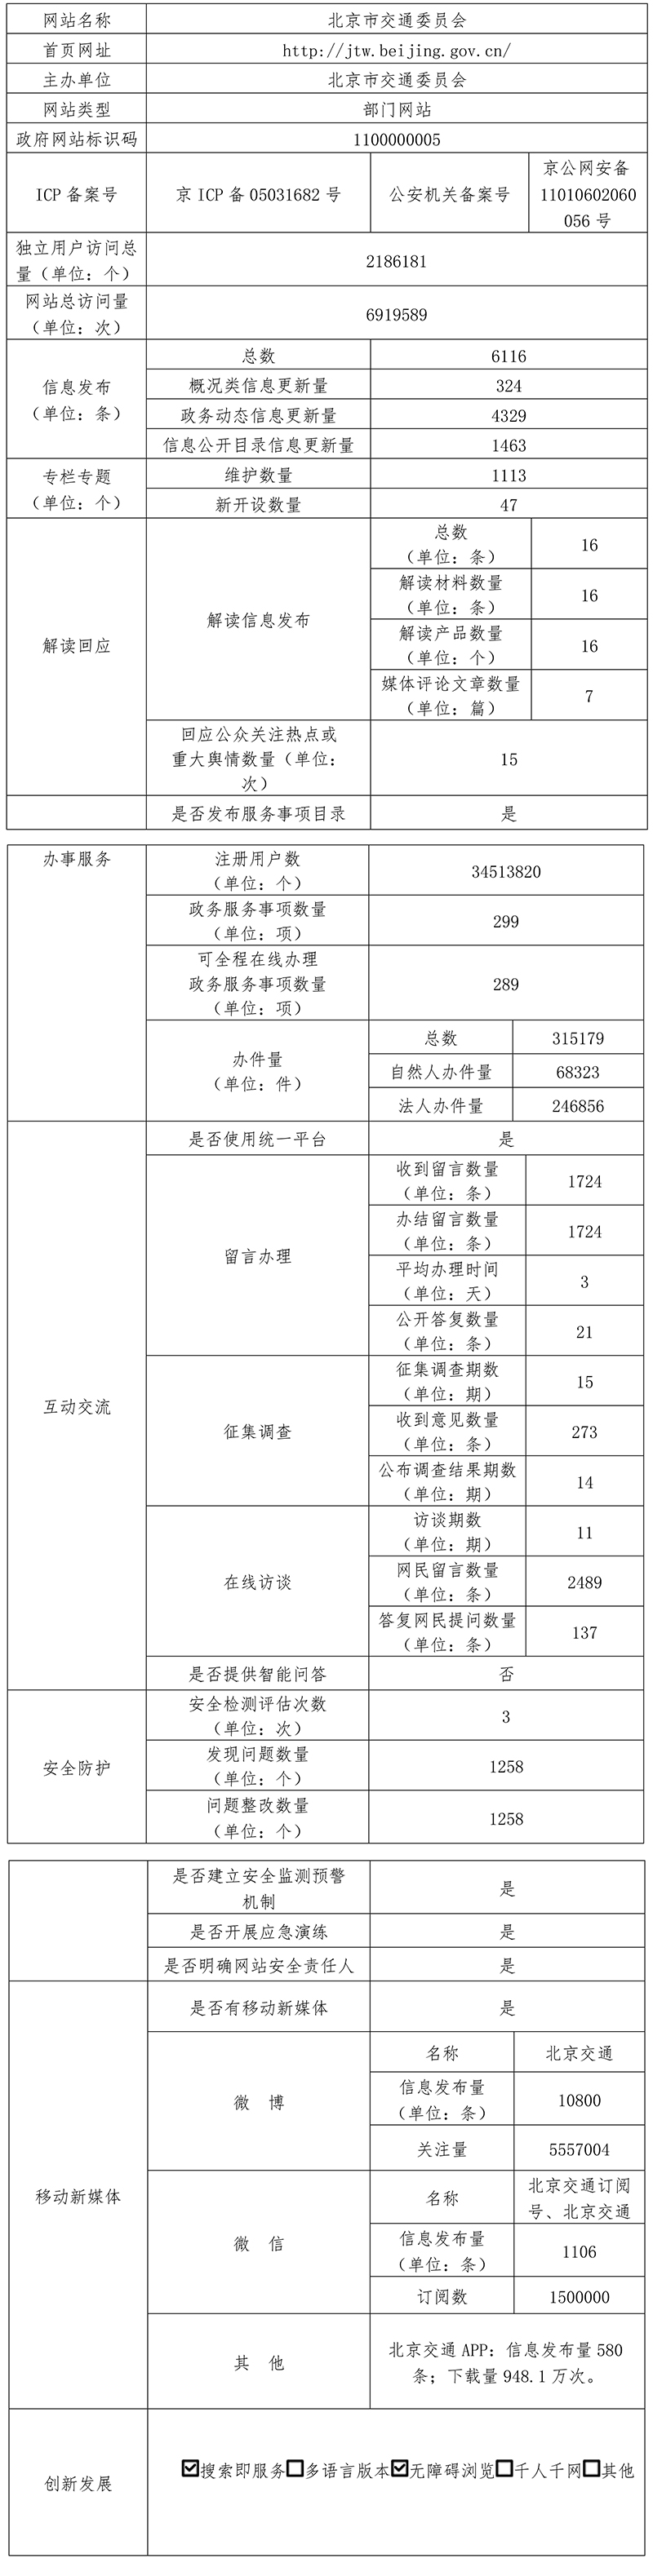 北京市交通委員會2021年政府網站年度工作報表